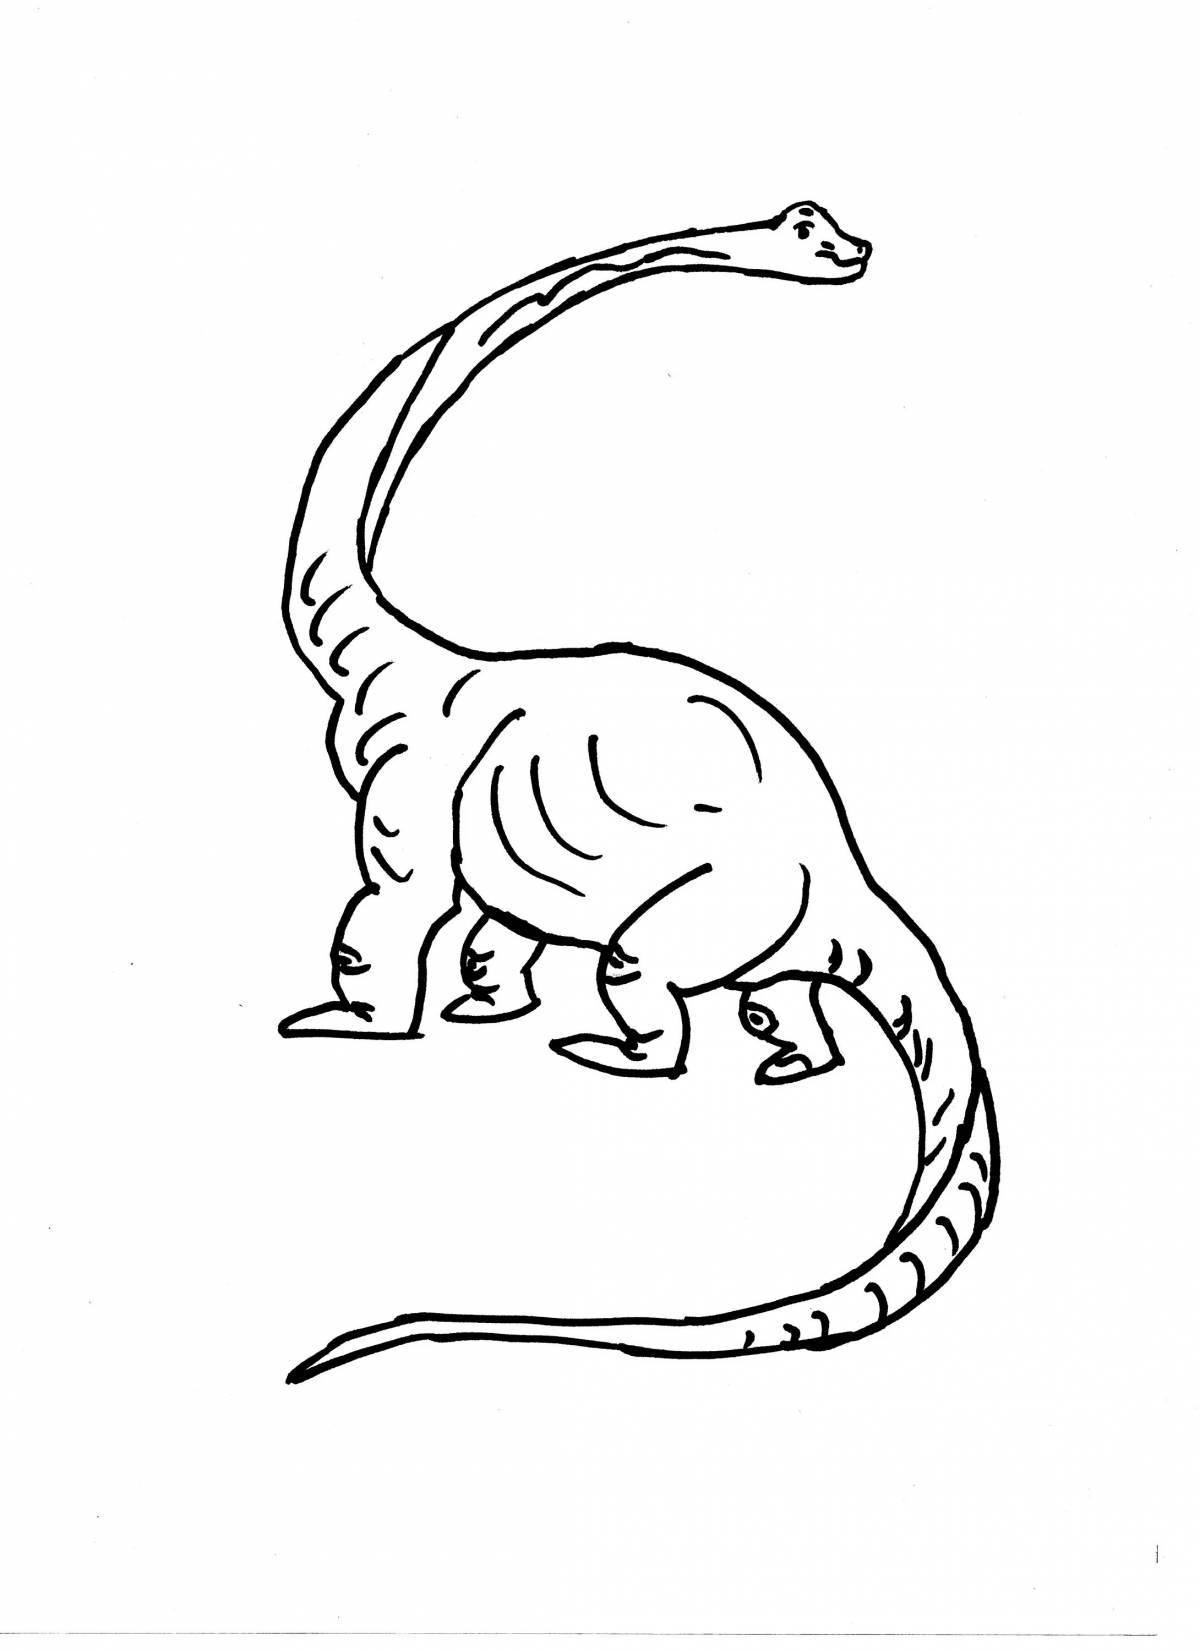 Humorous diplodocus coloring book